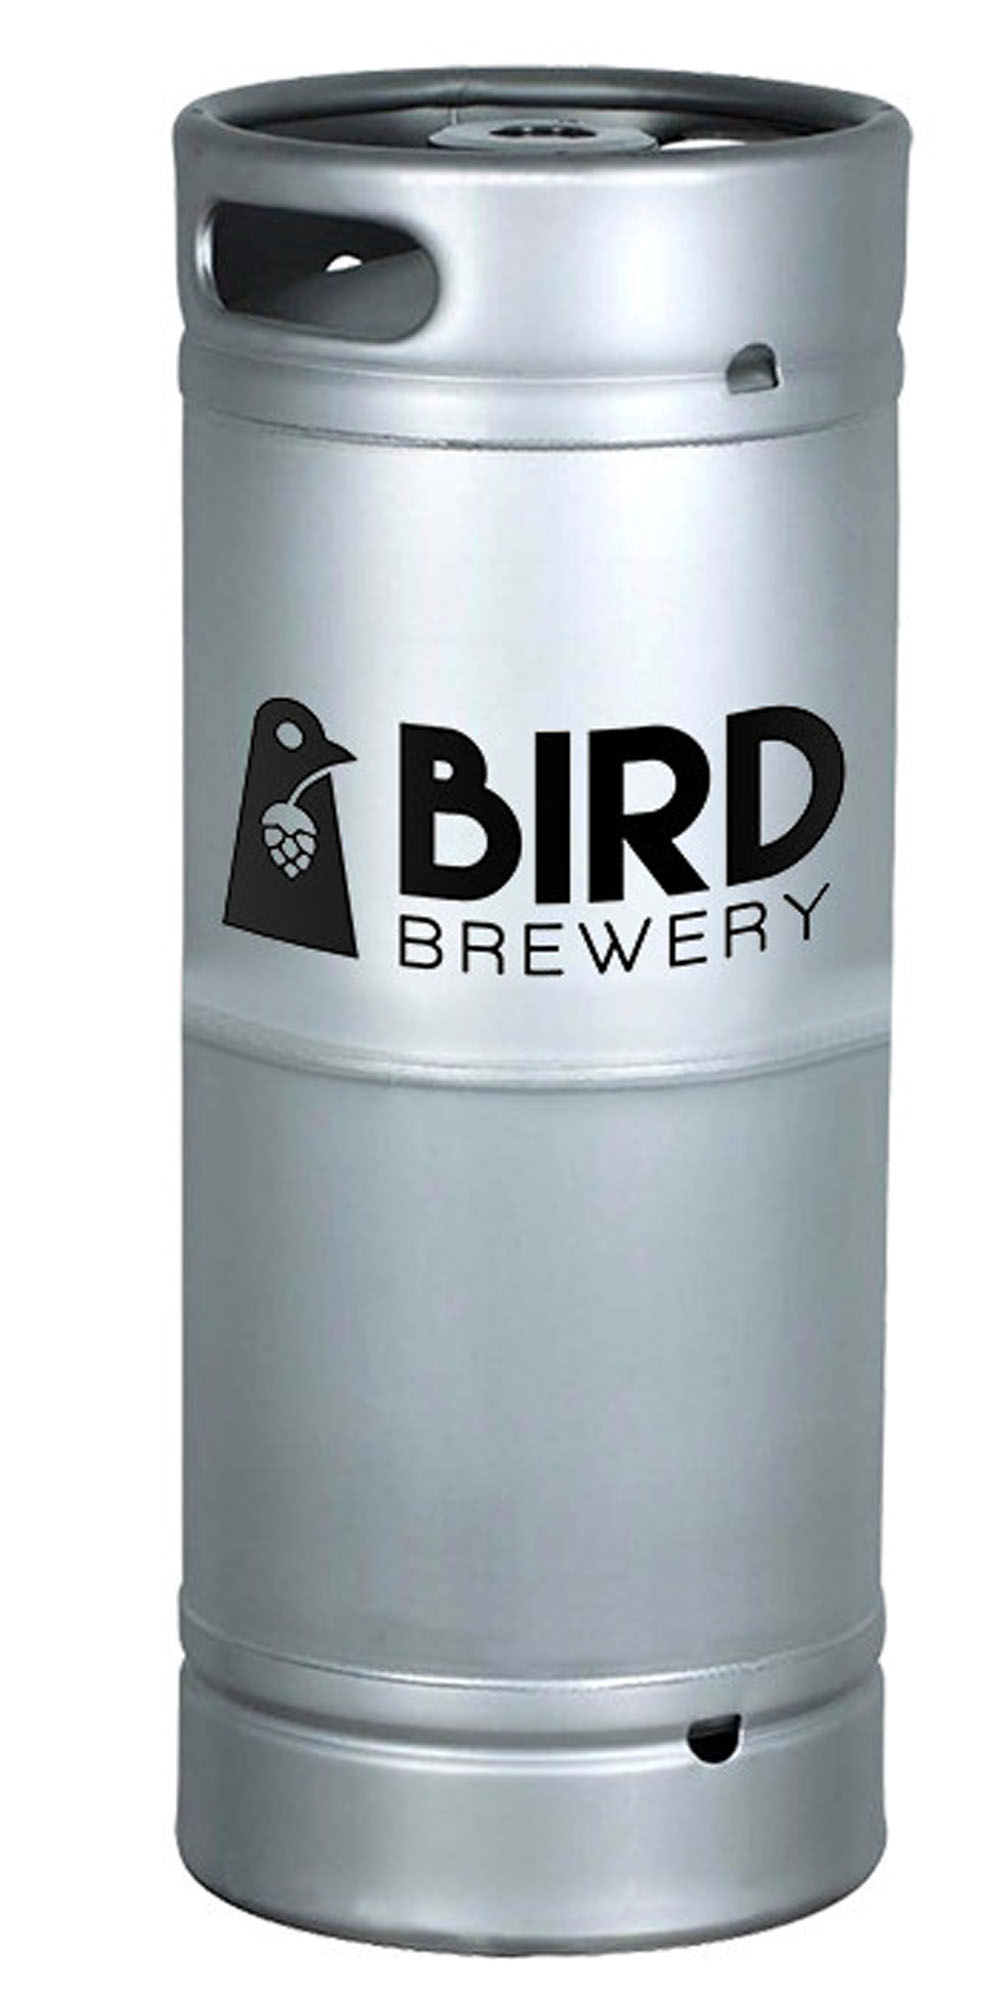 Bird Brewery Datisandere Koekoek Fust 20 ltr 5,6%